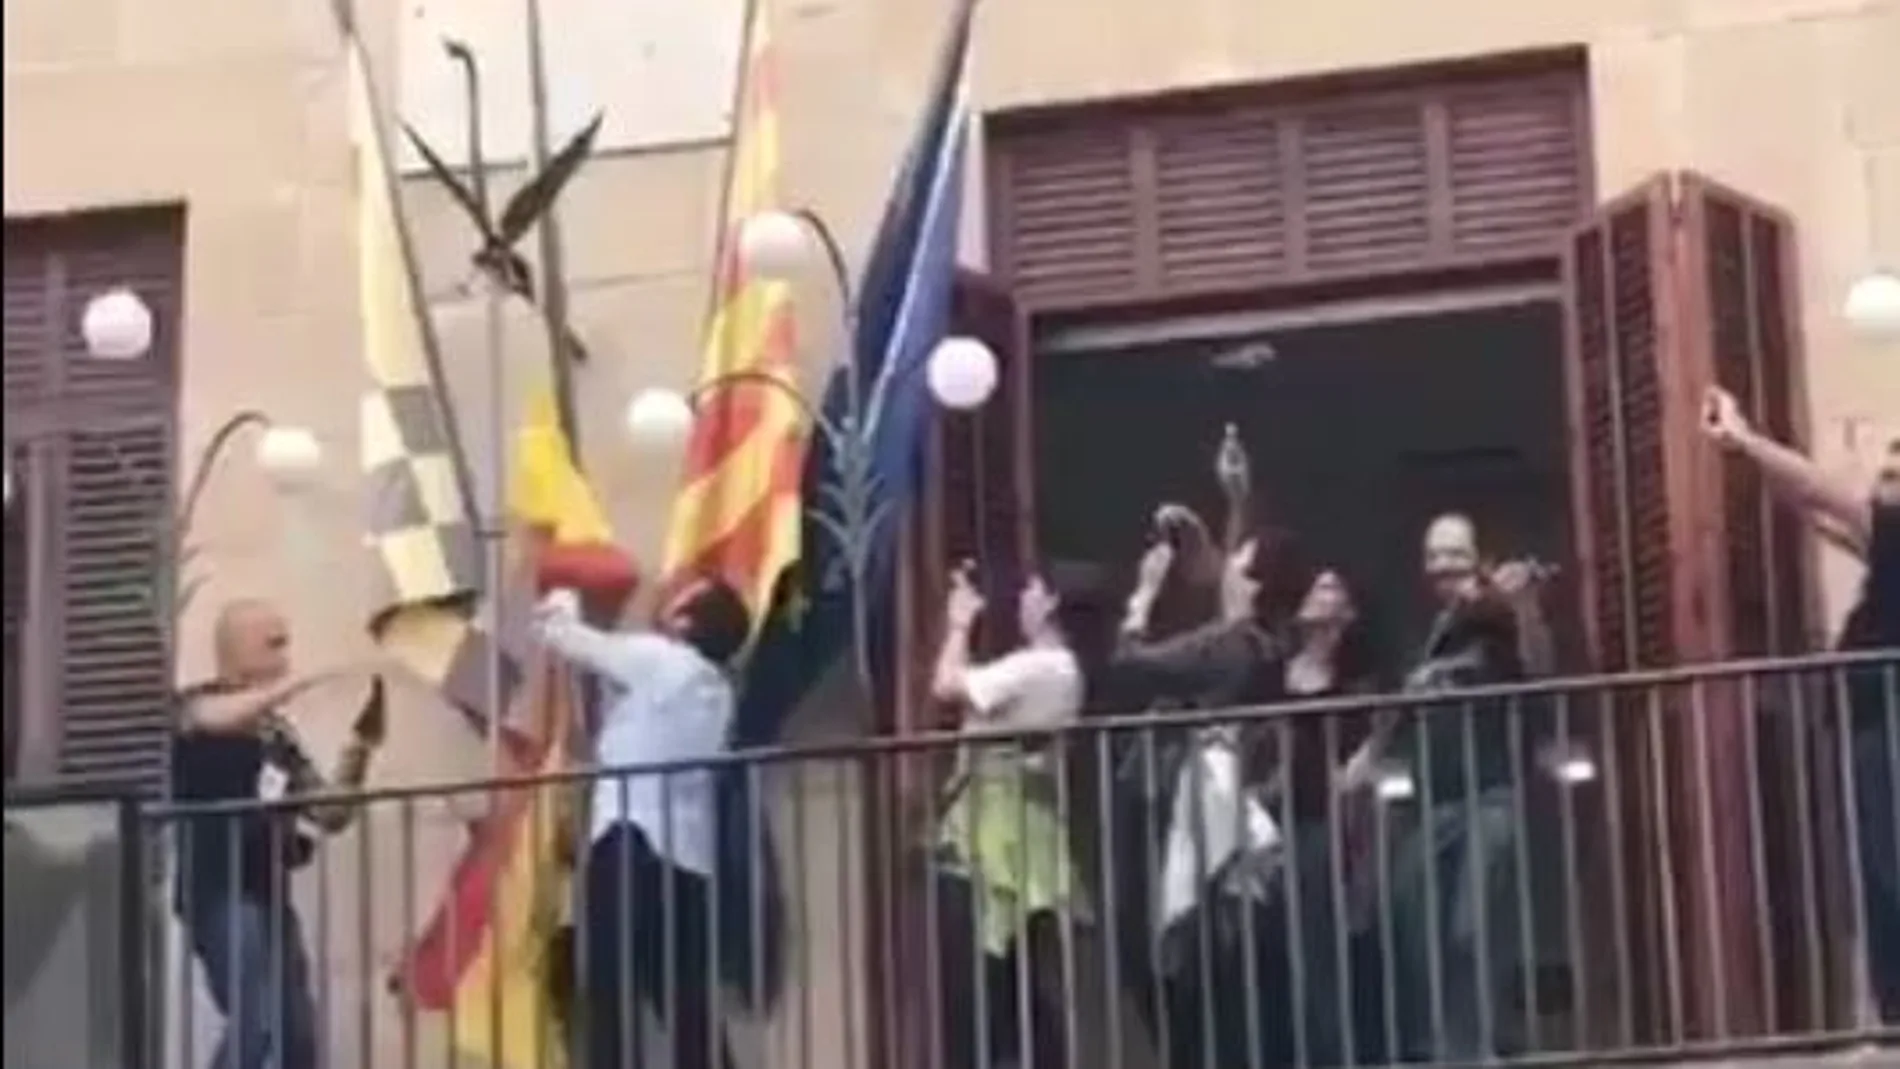 Arrancan la bandera de España de un ayuntamiento de Lérida